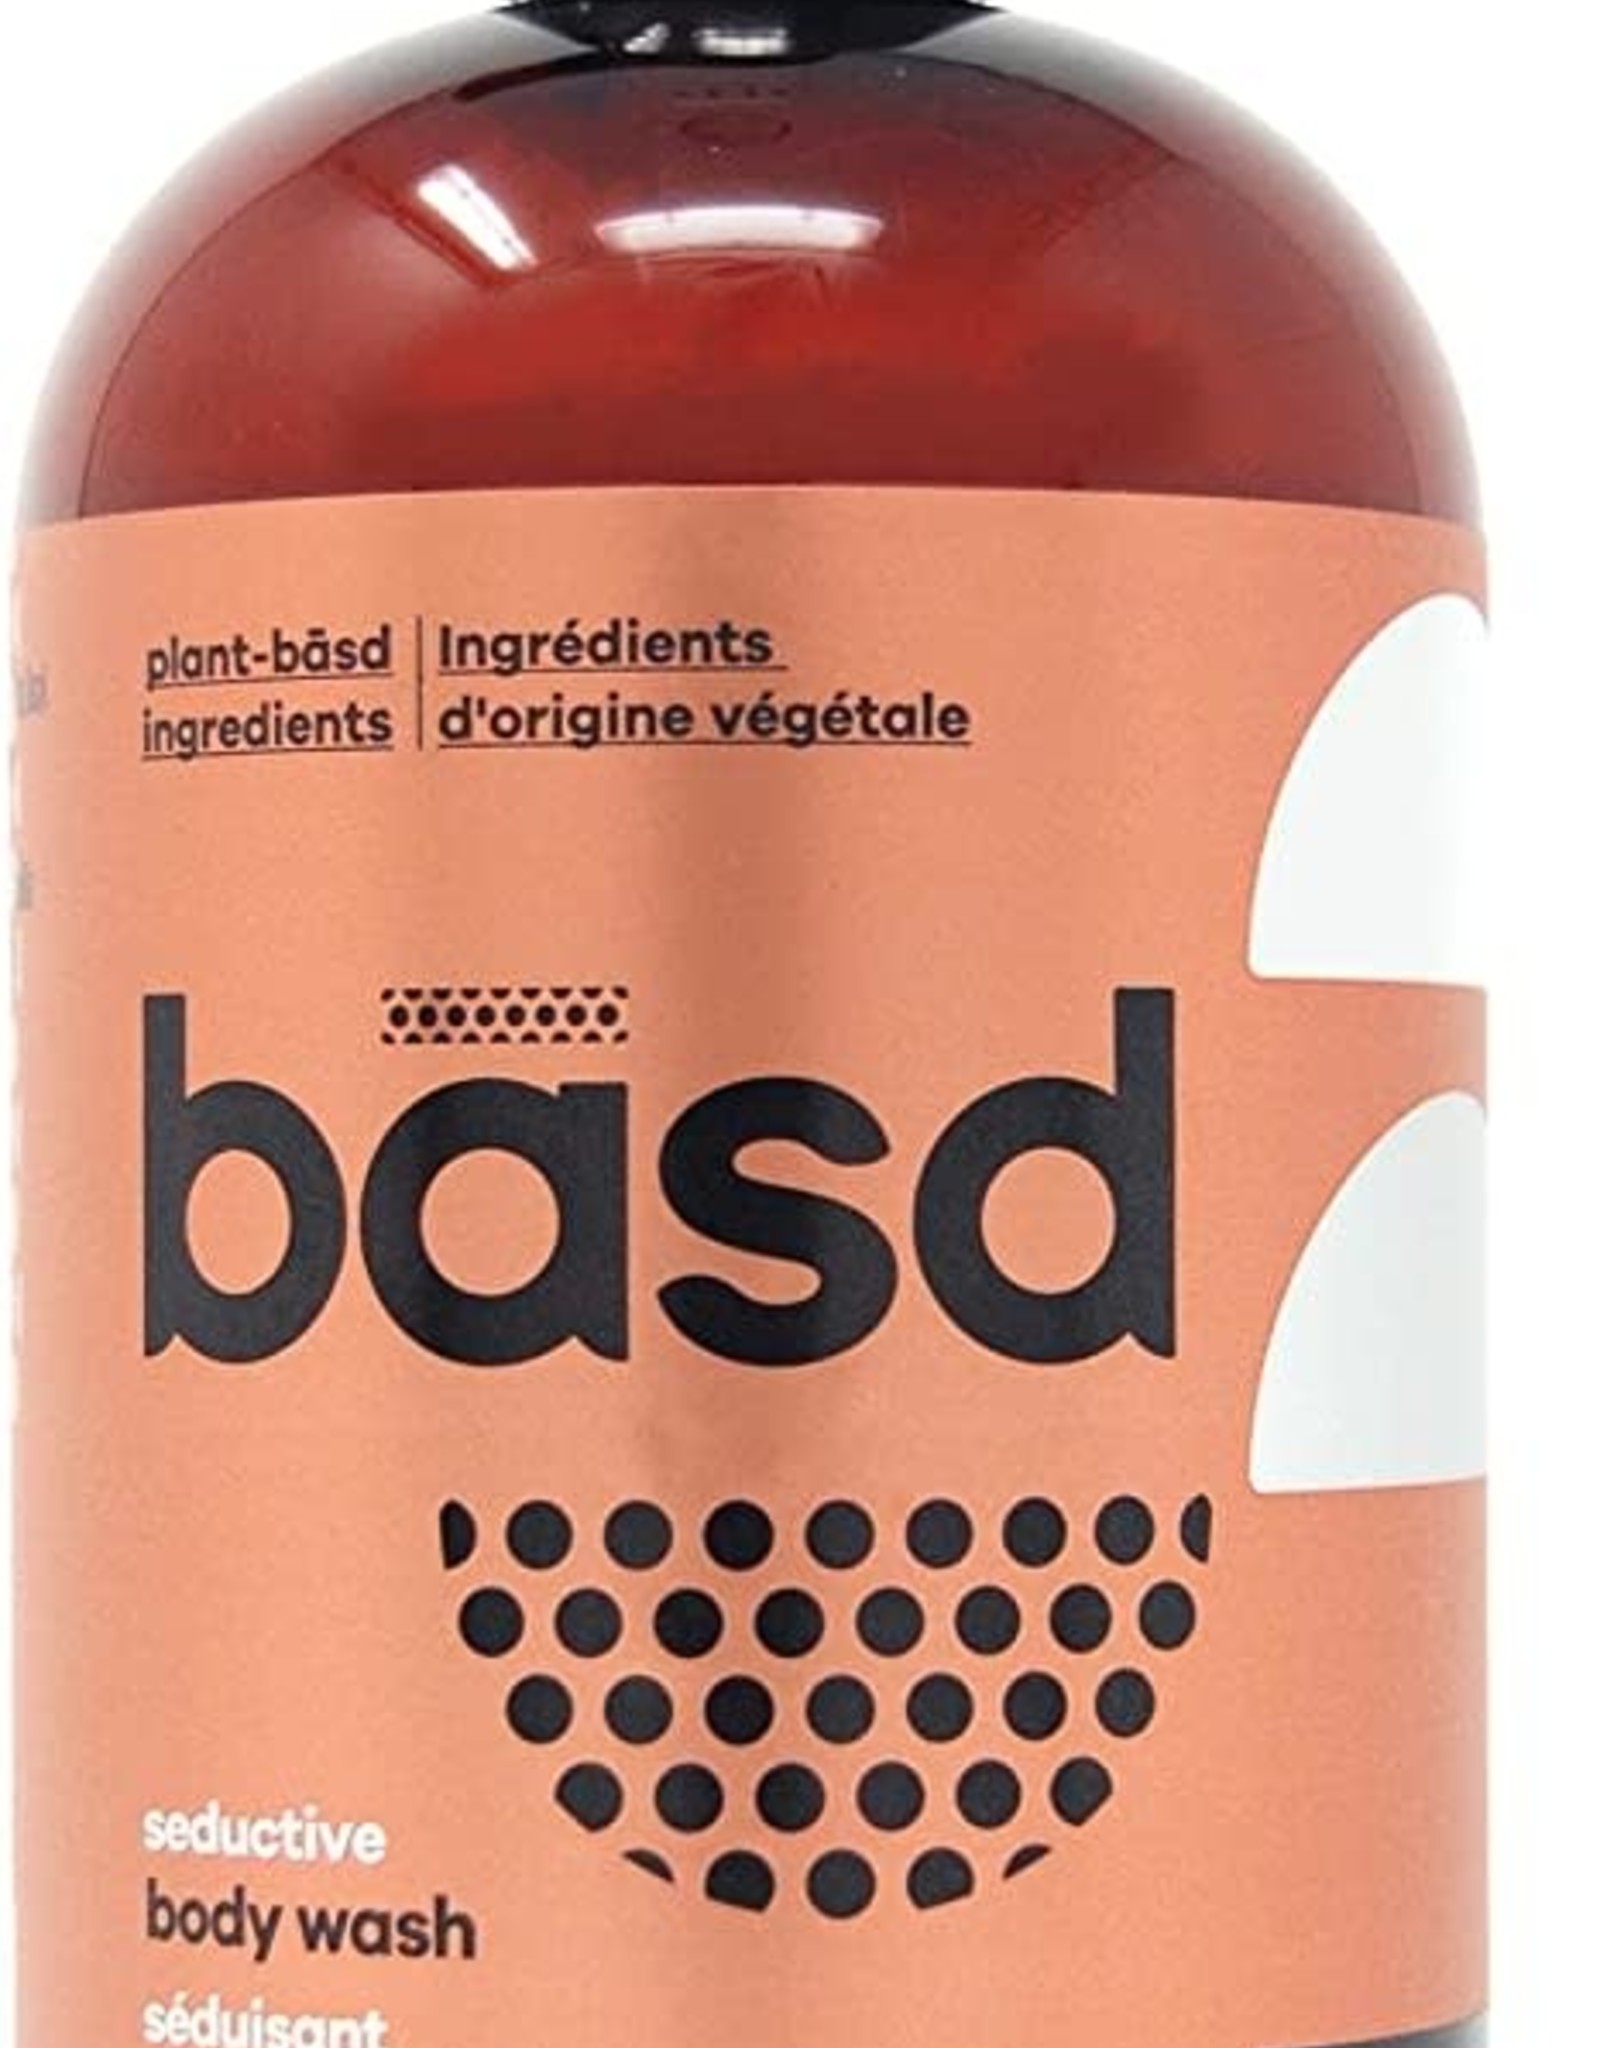 Basd Body Wash Basd